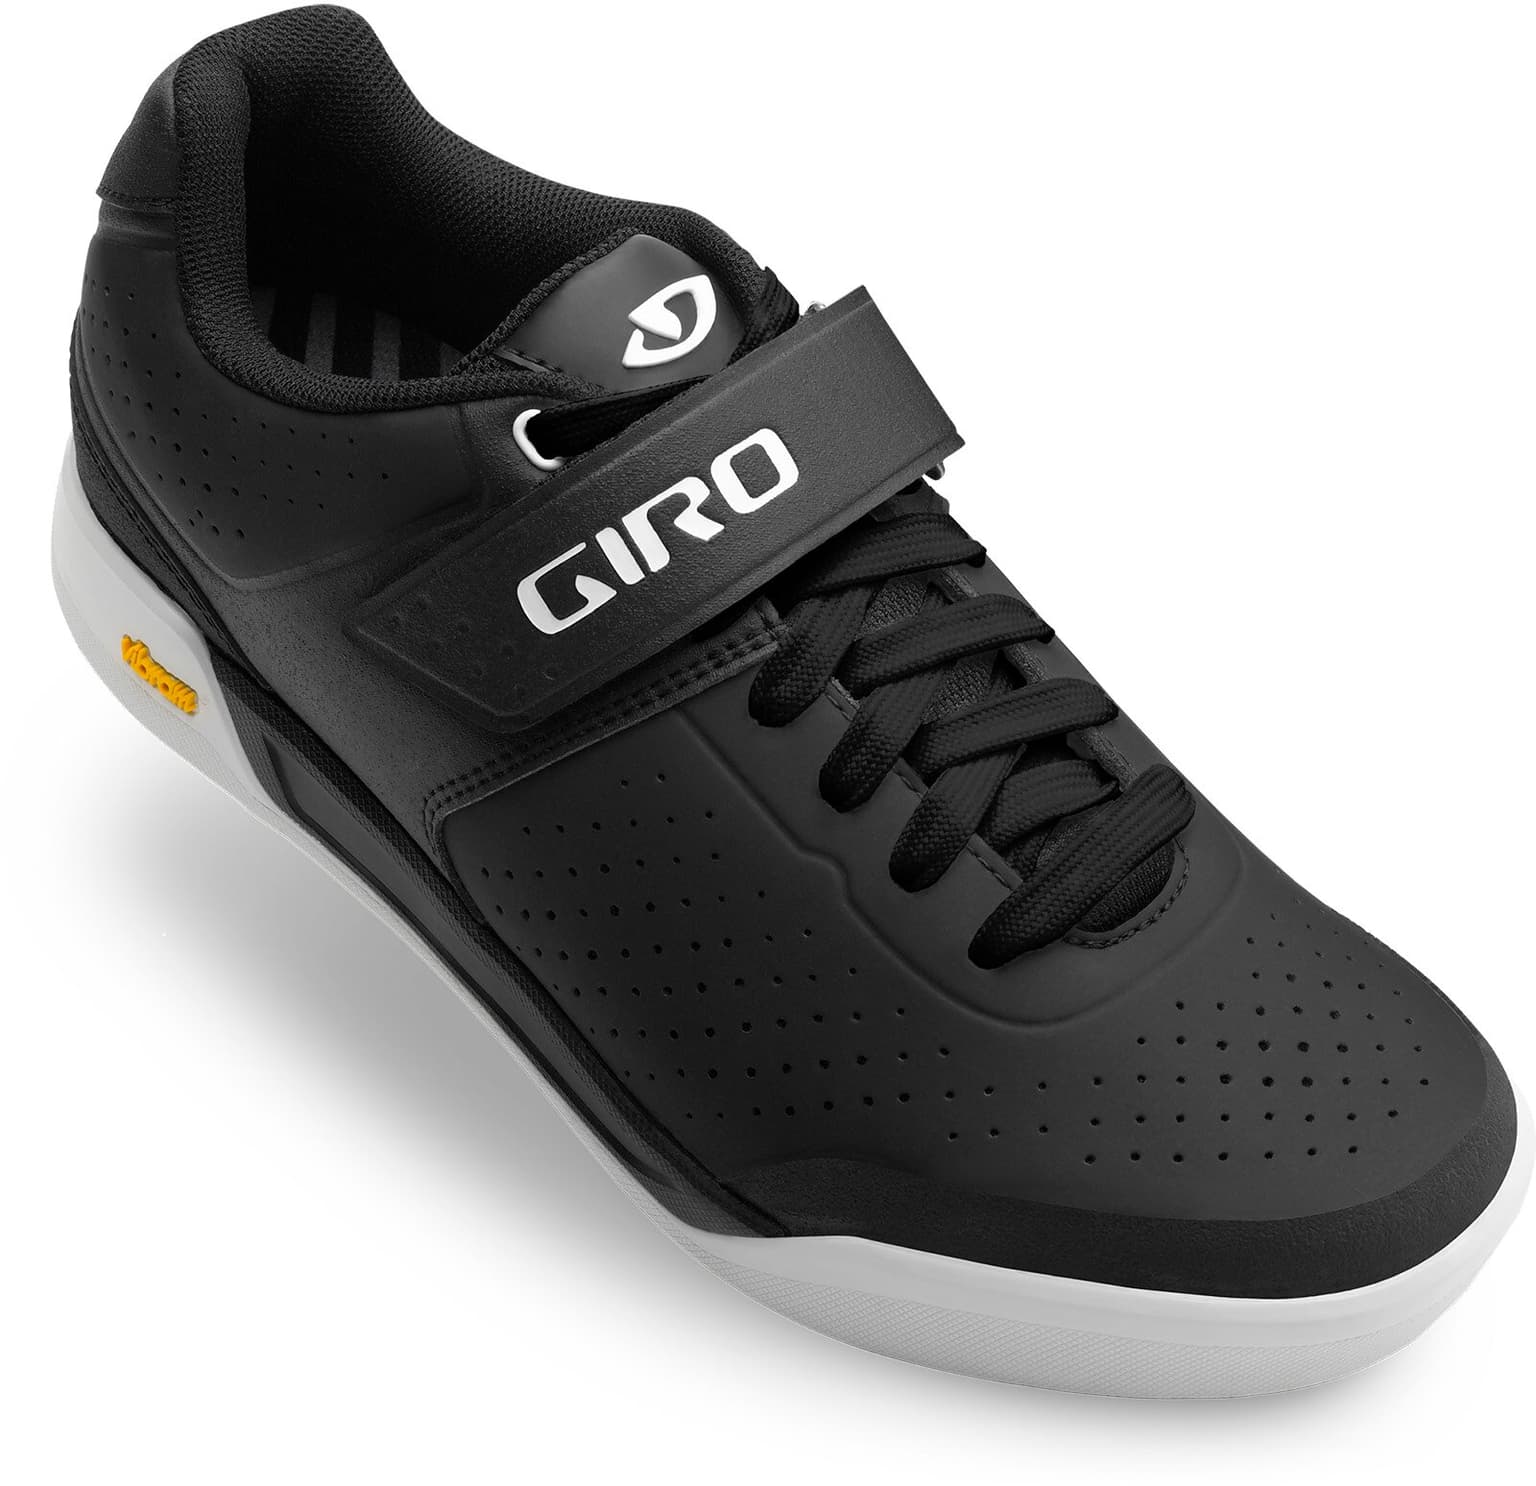 Giro Giro Chamber II Chaussures de cyclisme blanc 2